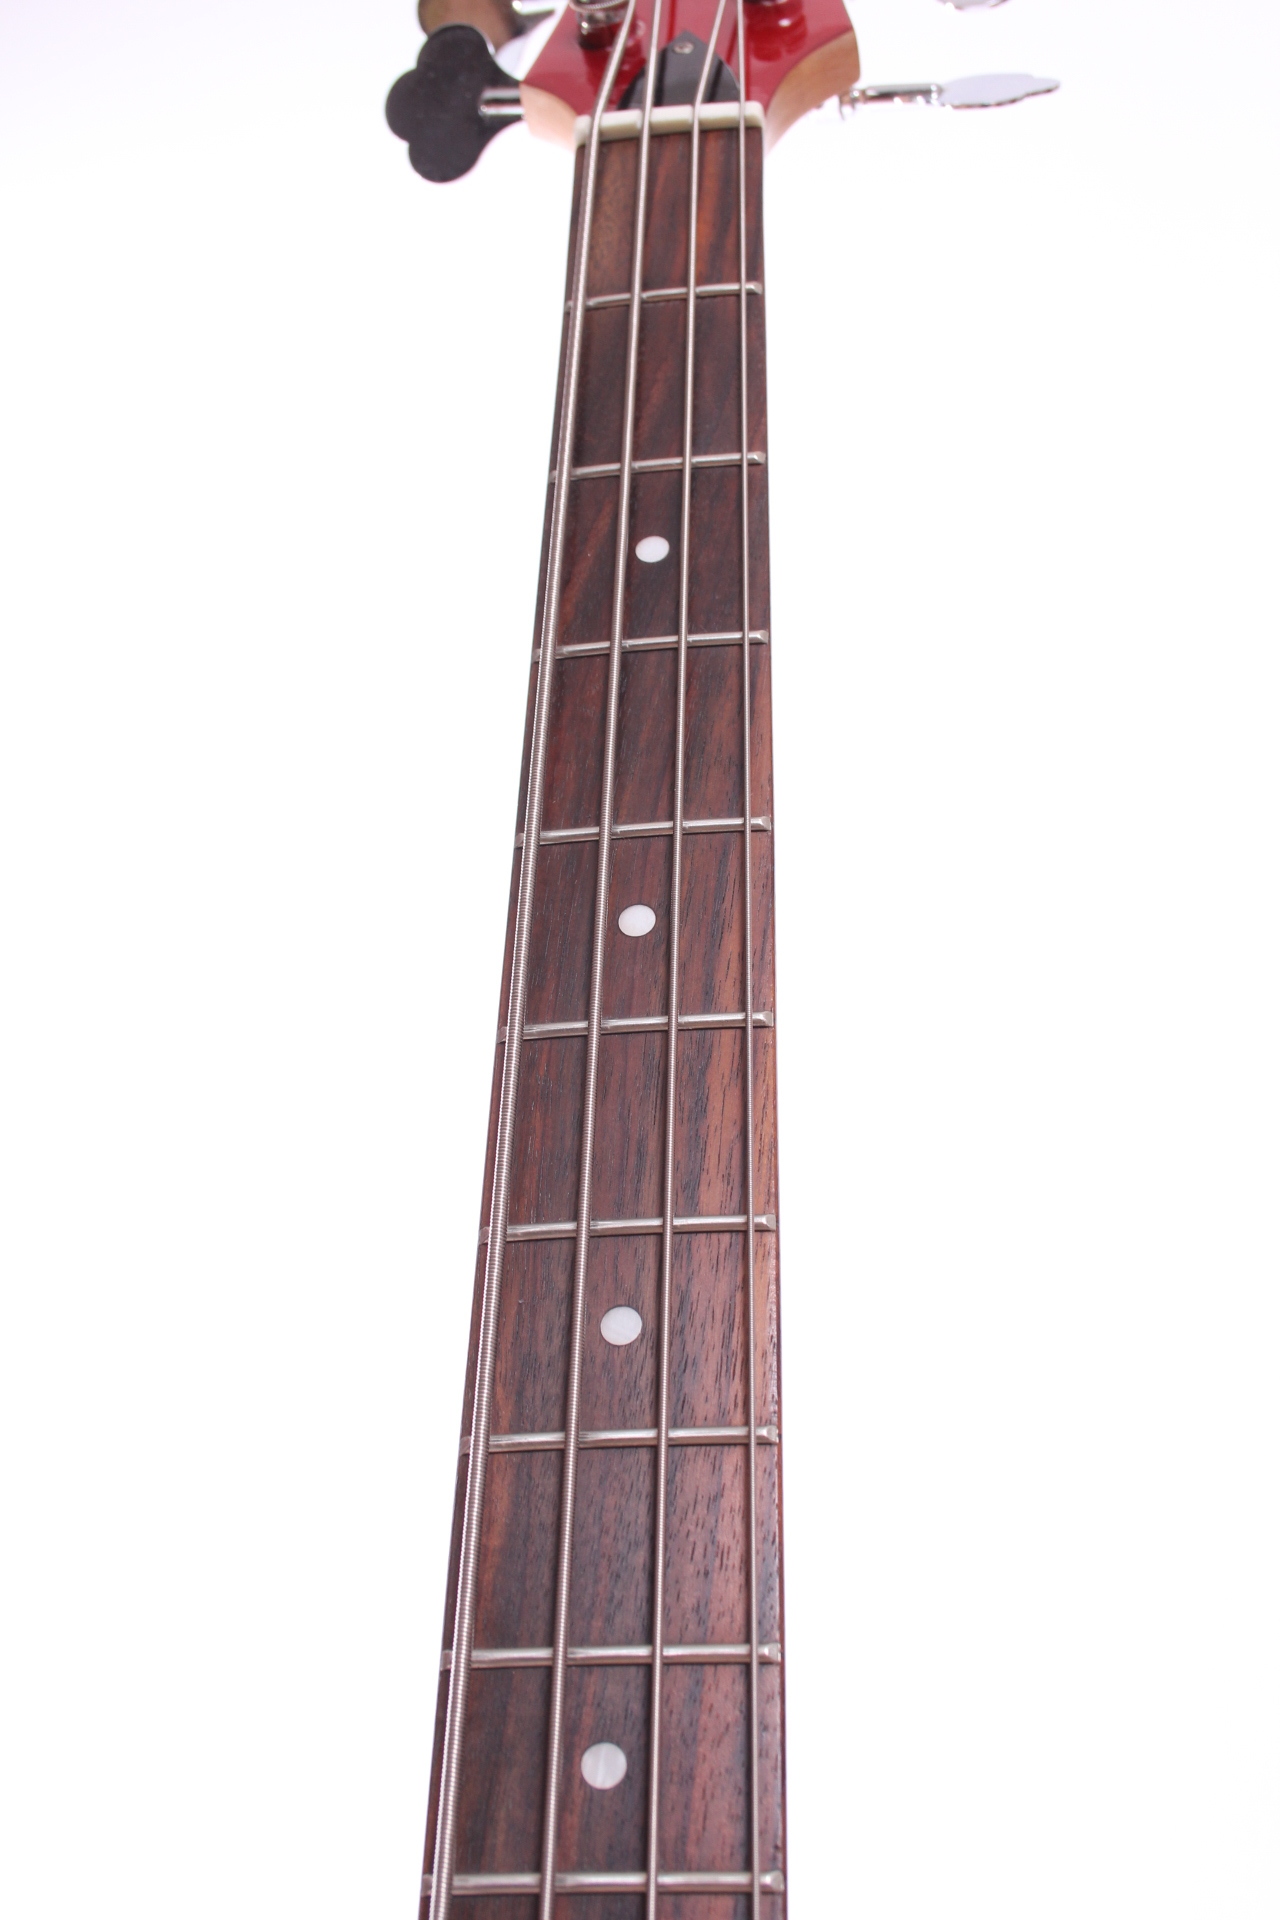 mosrite guitar serial number lookup